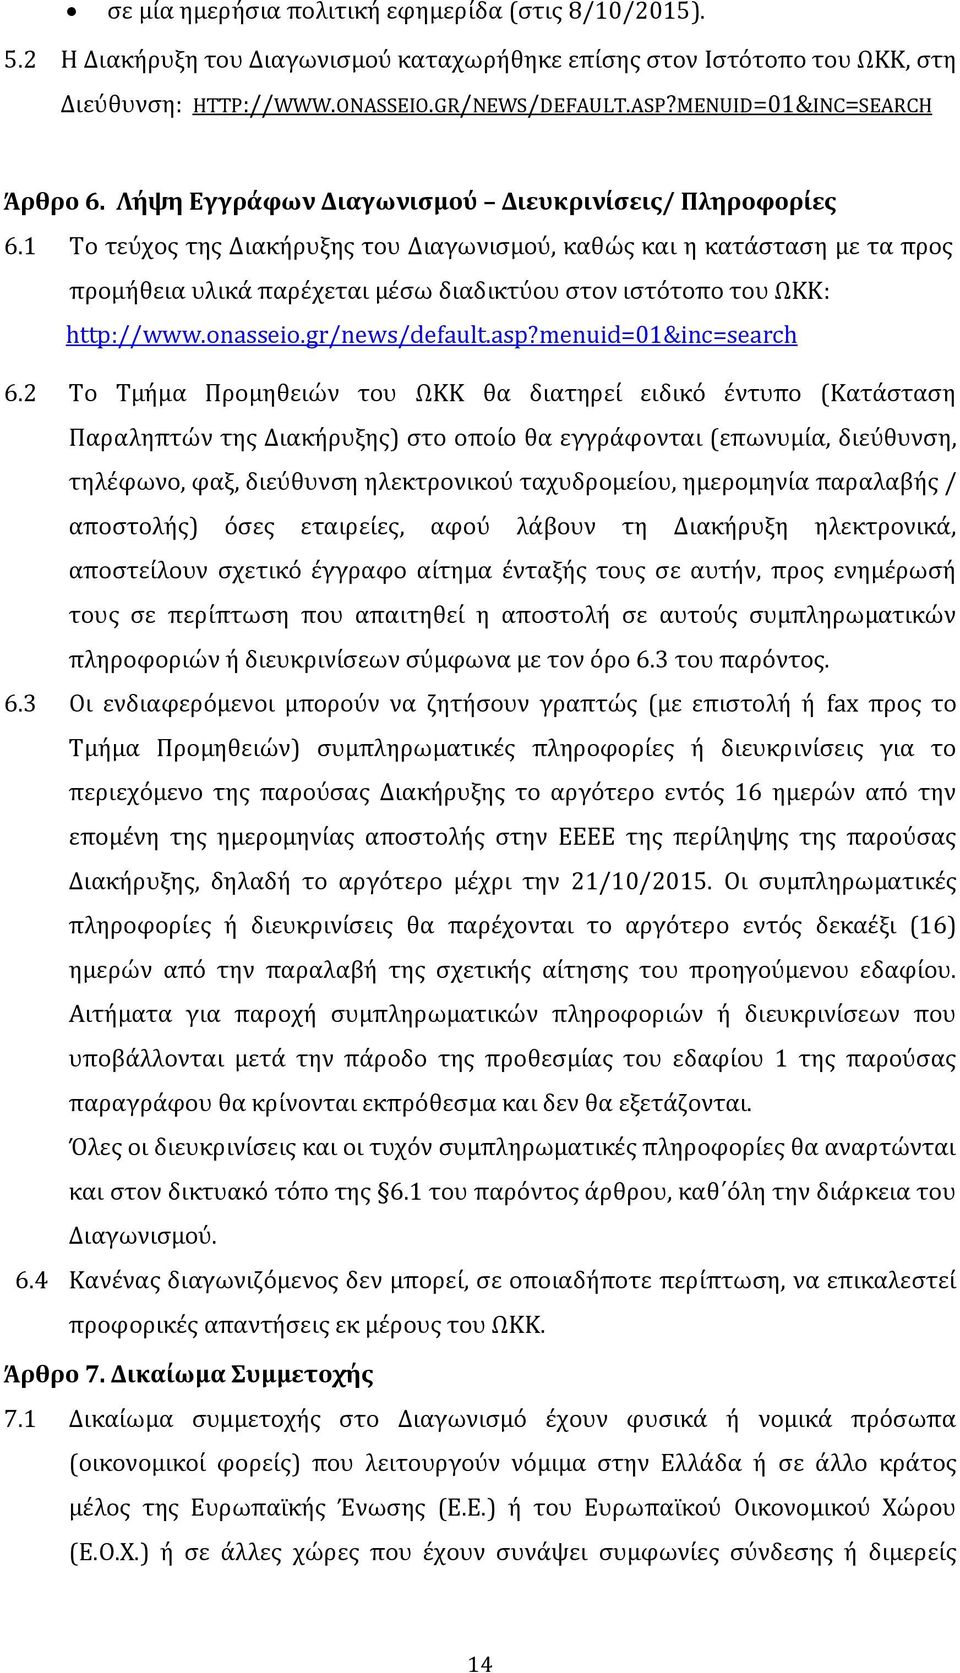 1 Το τεύχος της Διακήρυξης του Διαγωνισμού, καθώς και η κατάσταση με τα προς προμήθεια υλικά παρέχεται μέσω διαδικτύου στον ιστότοπο του ΩΚΚ: http://www.onasseio.gr/news/default.asp?